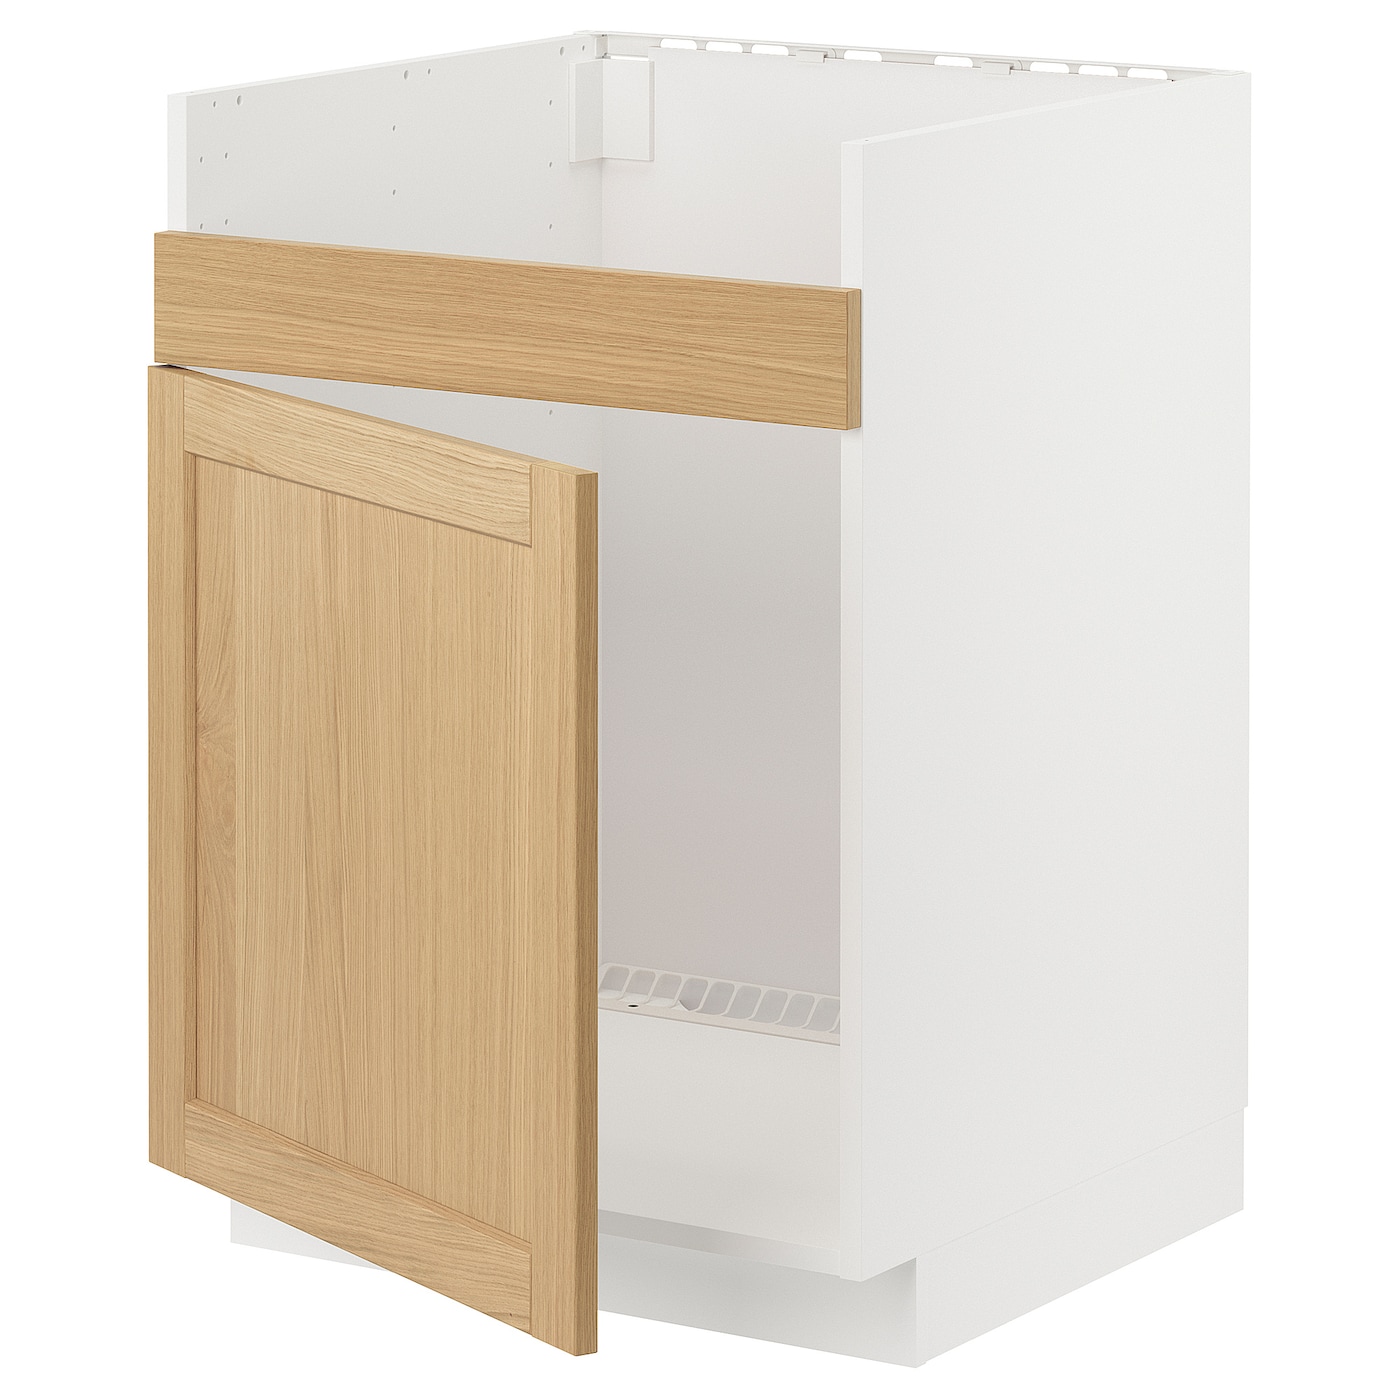 Напольный шкаф - METOD IKEA/ МЕТОД ИКЕА,  60х60 см, белый/под беленый дуб